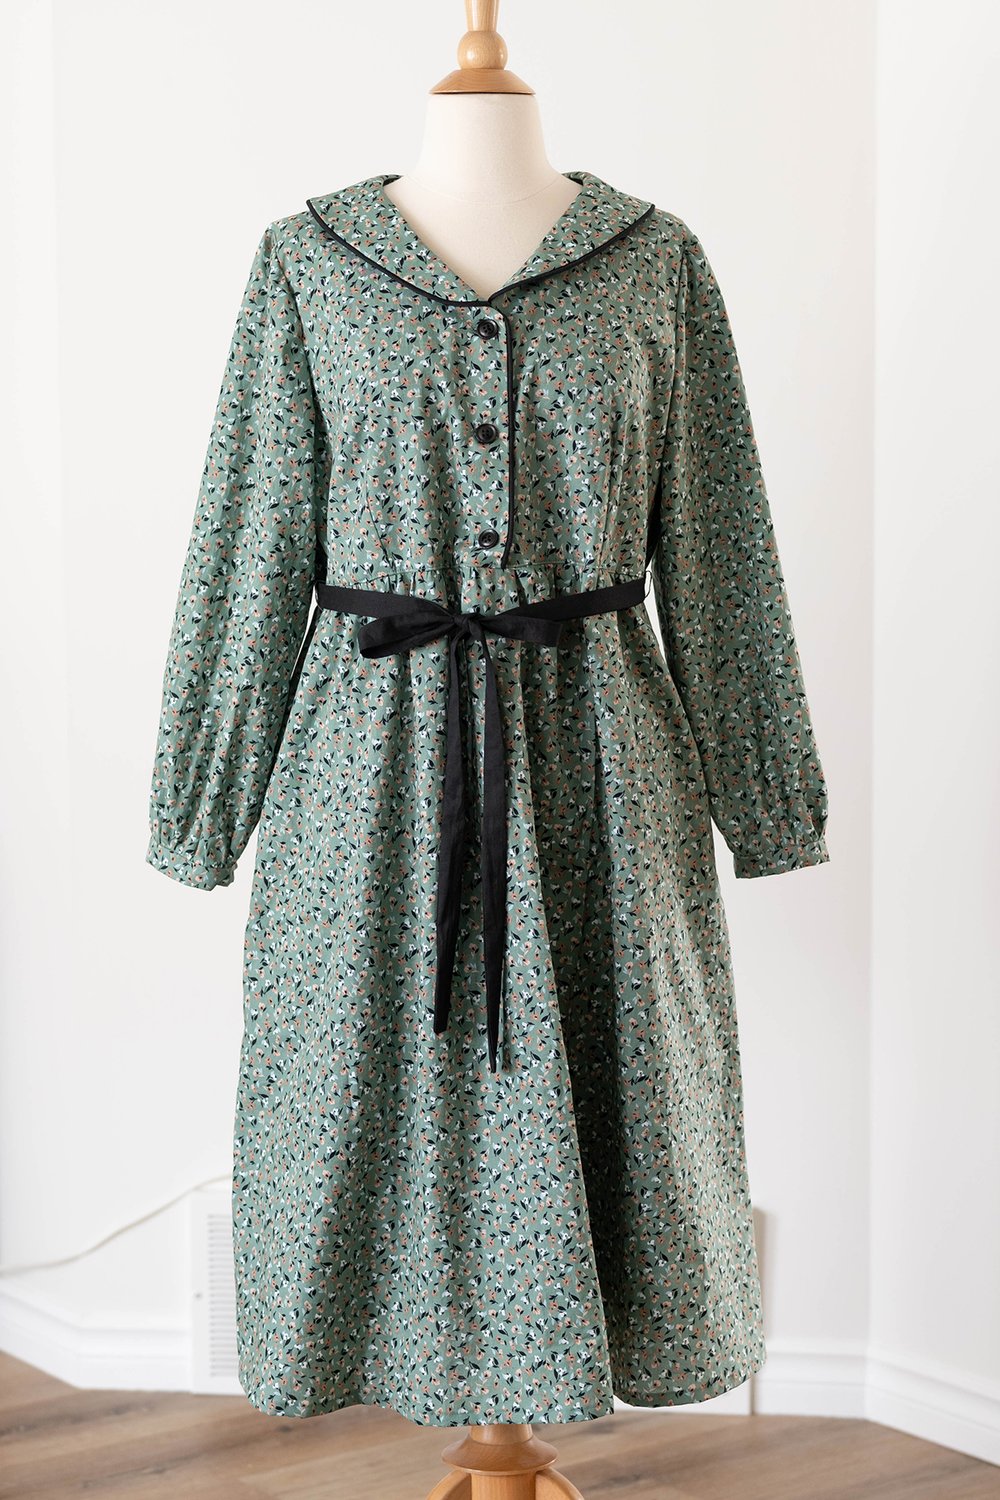 Sage green floral dress